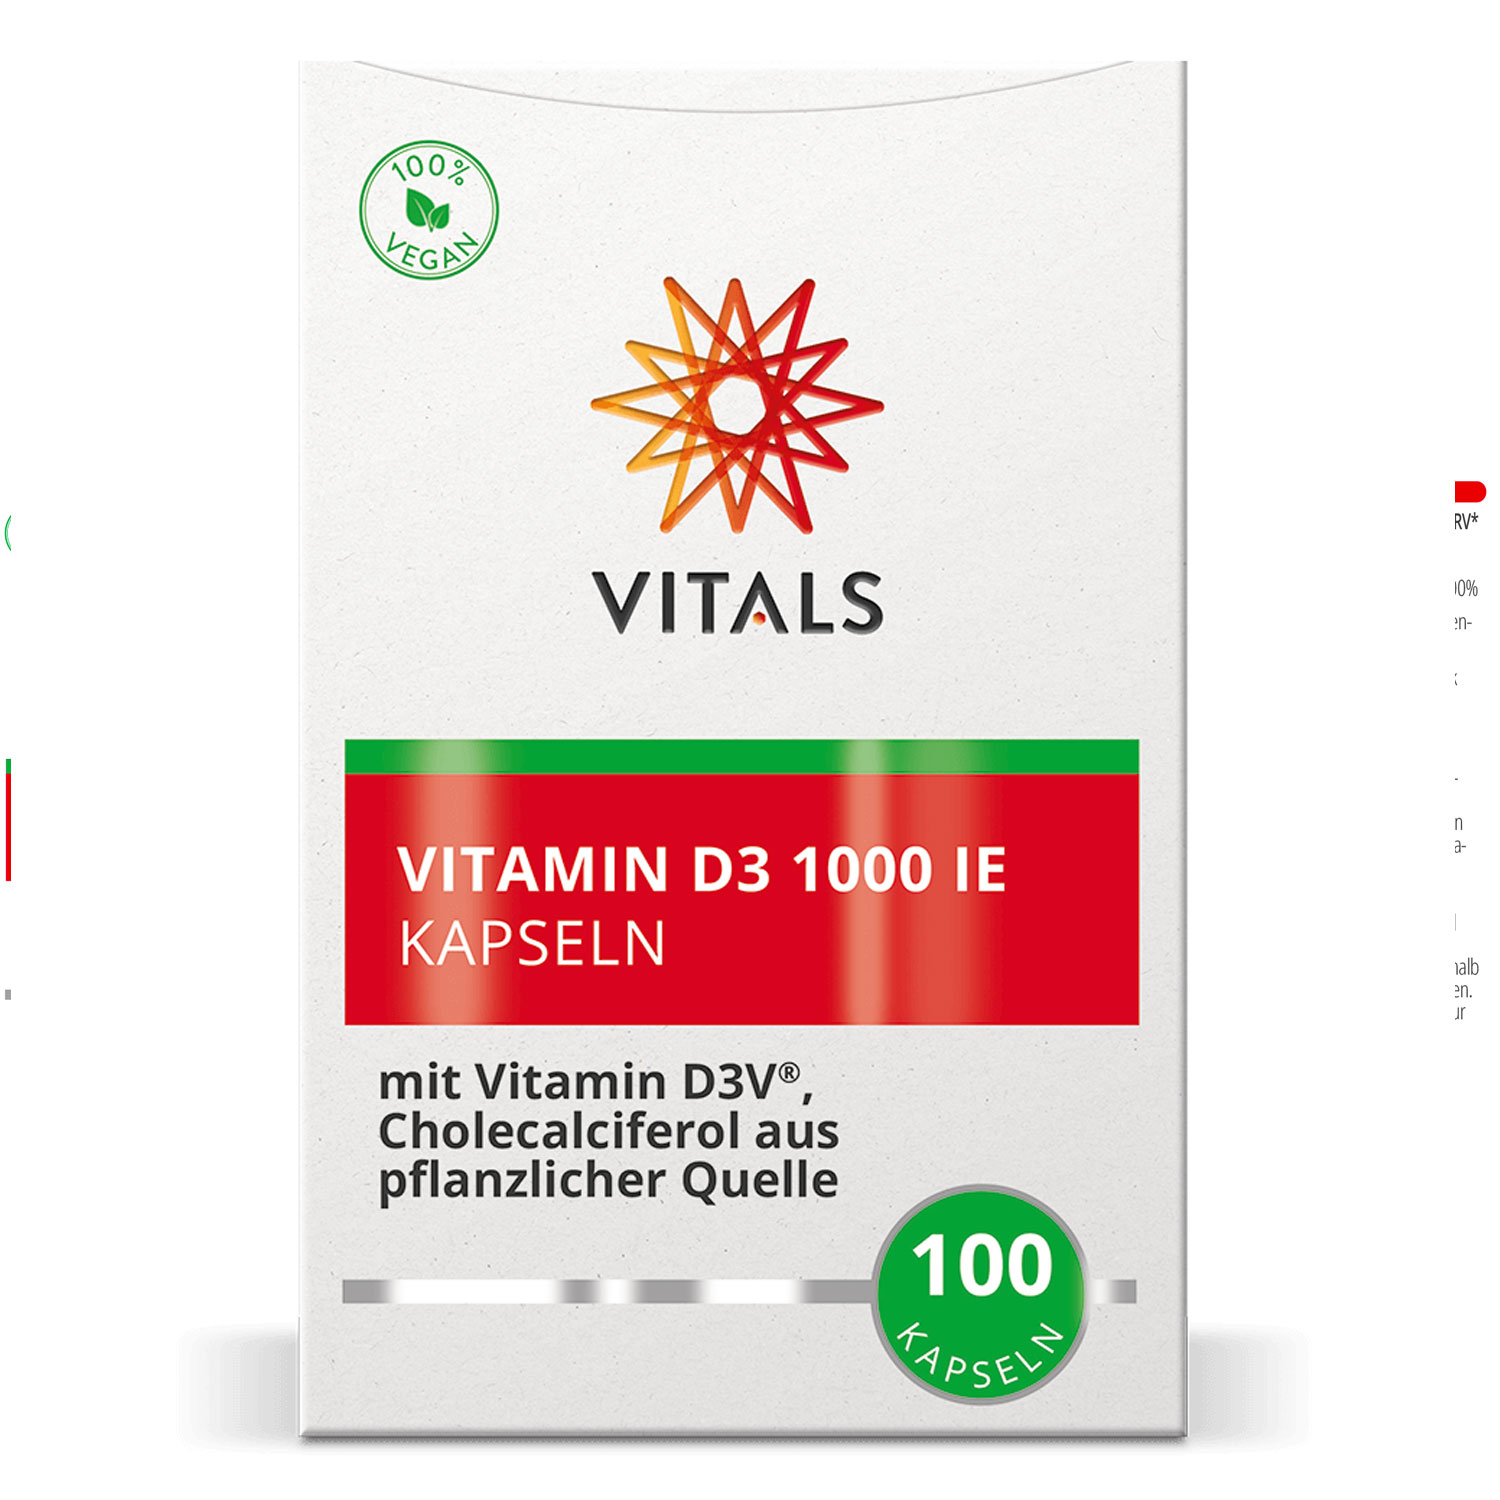 Vitamin D3 1000 IE von Vitals - Verpackung